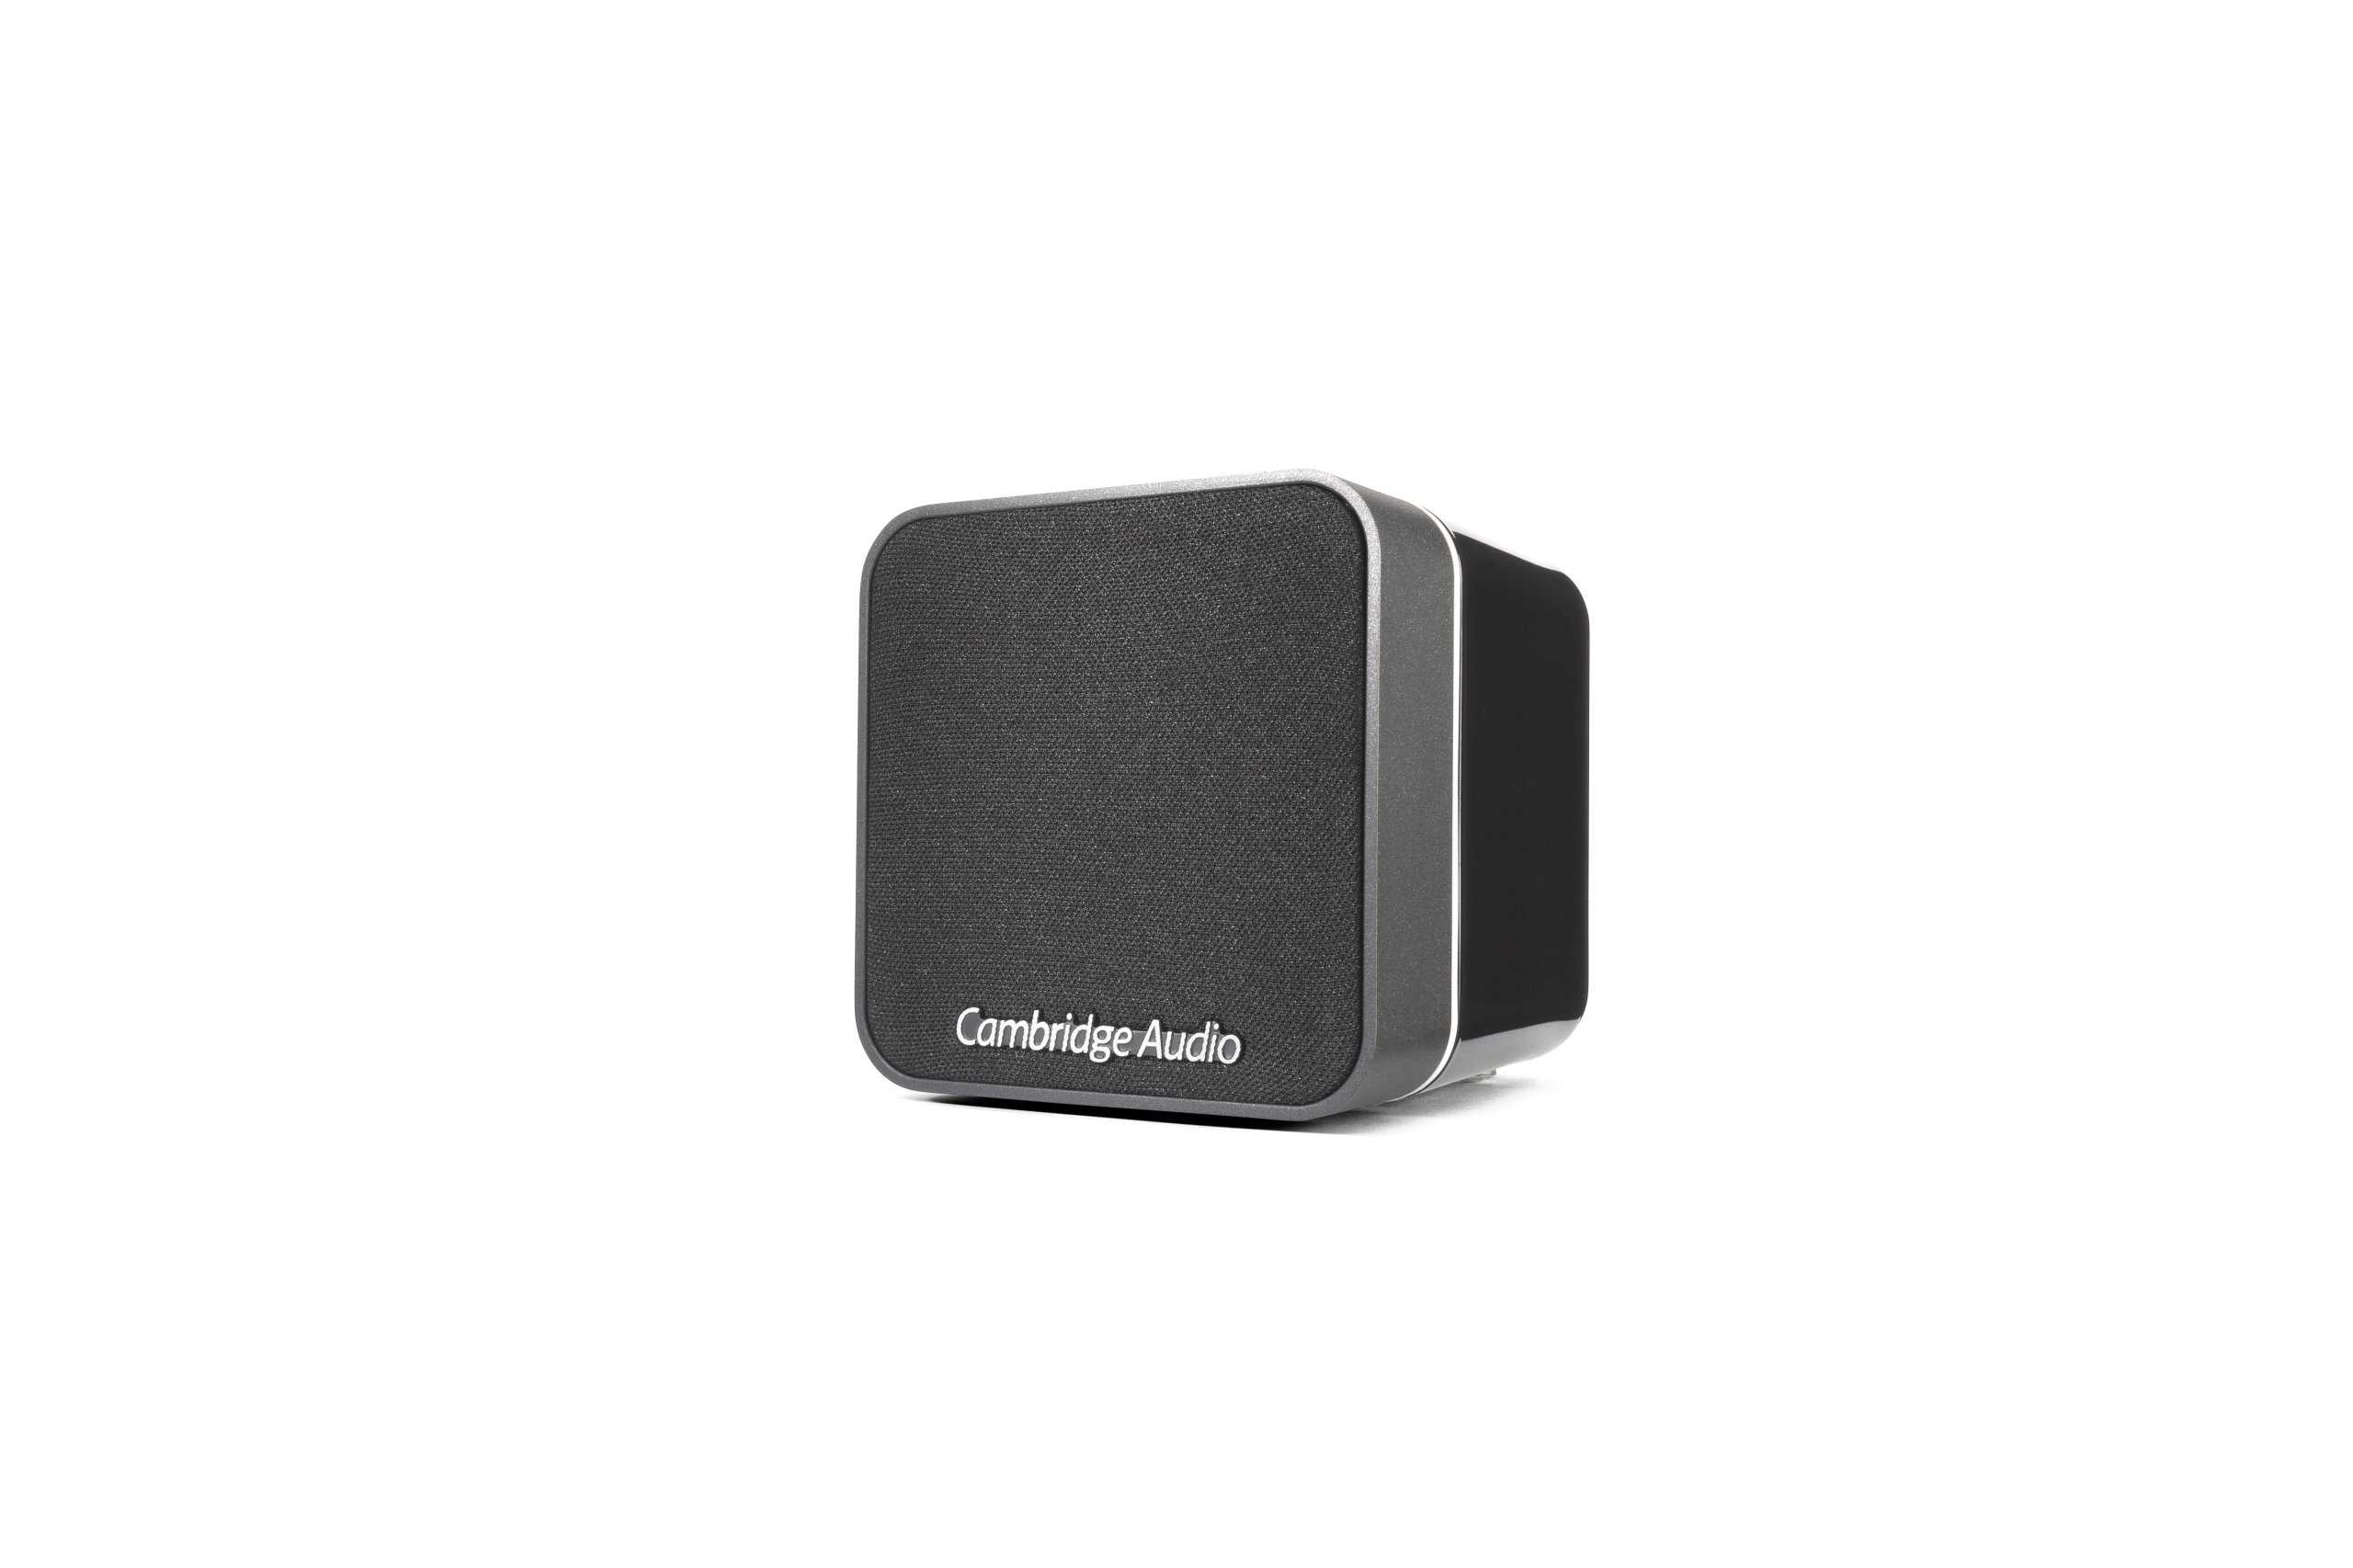 Тест сетевого плеера cambridge audio cxn и усилителя cambridge audio cxa80: созерцать и сопереживать